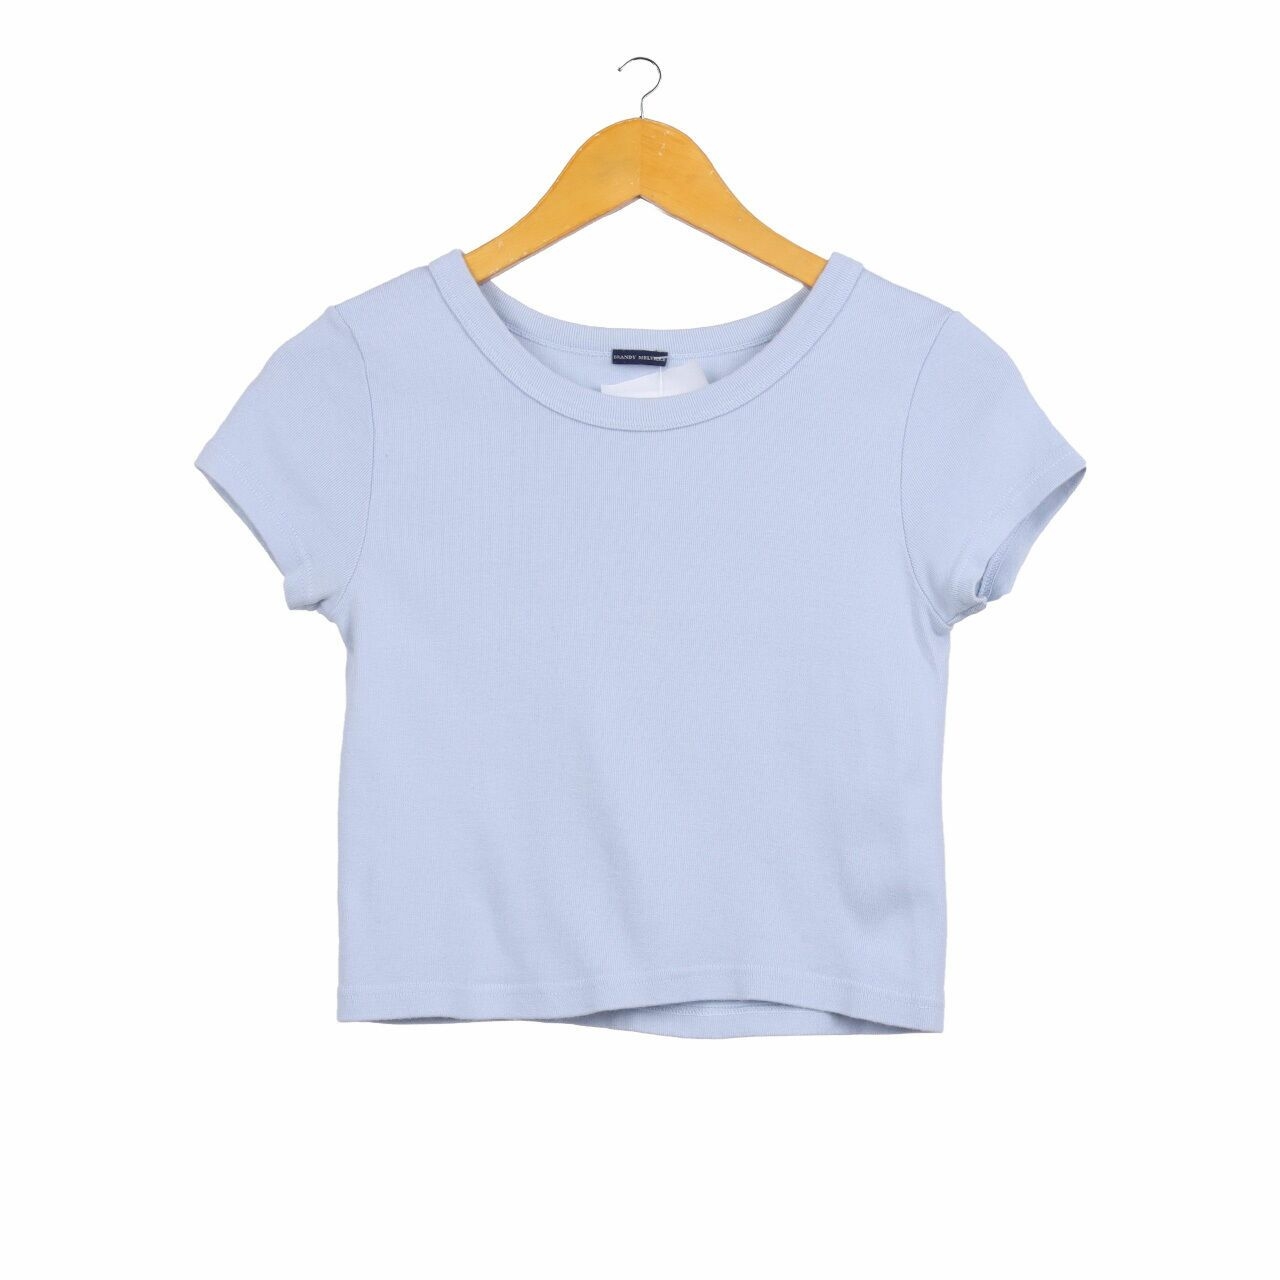 Brandy Melville Light Blue T-Shirt